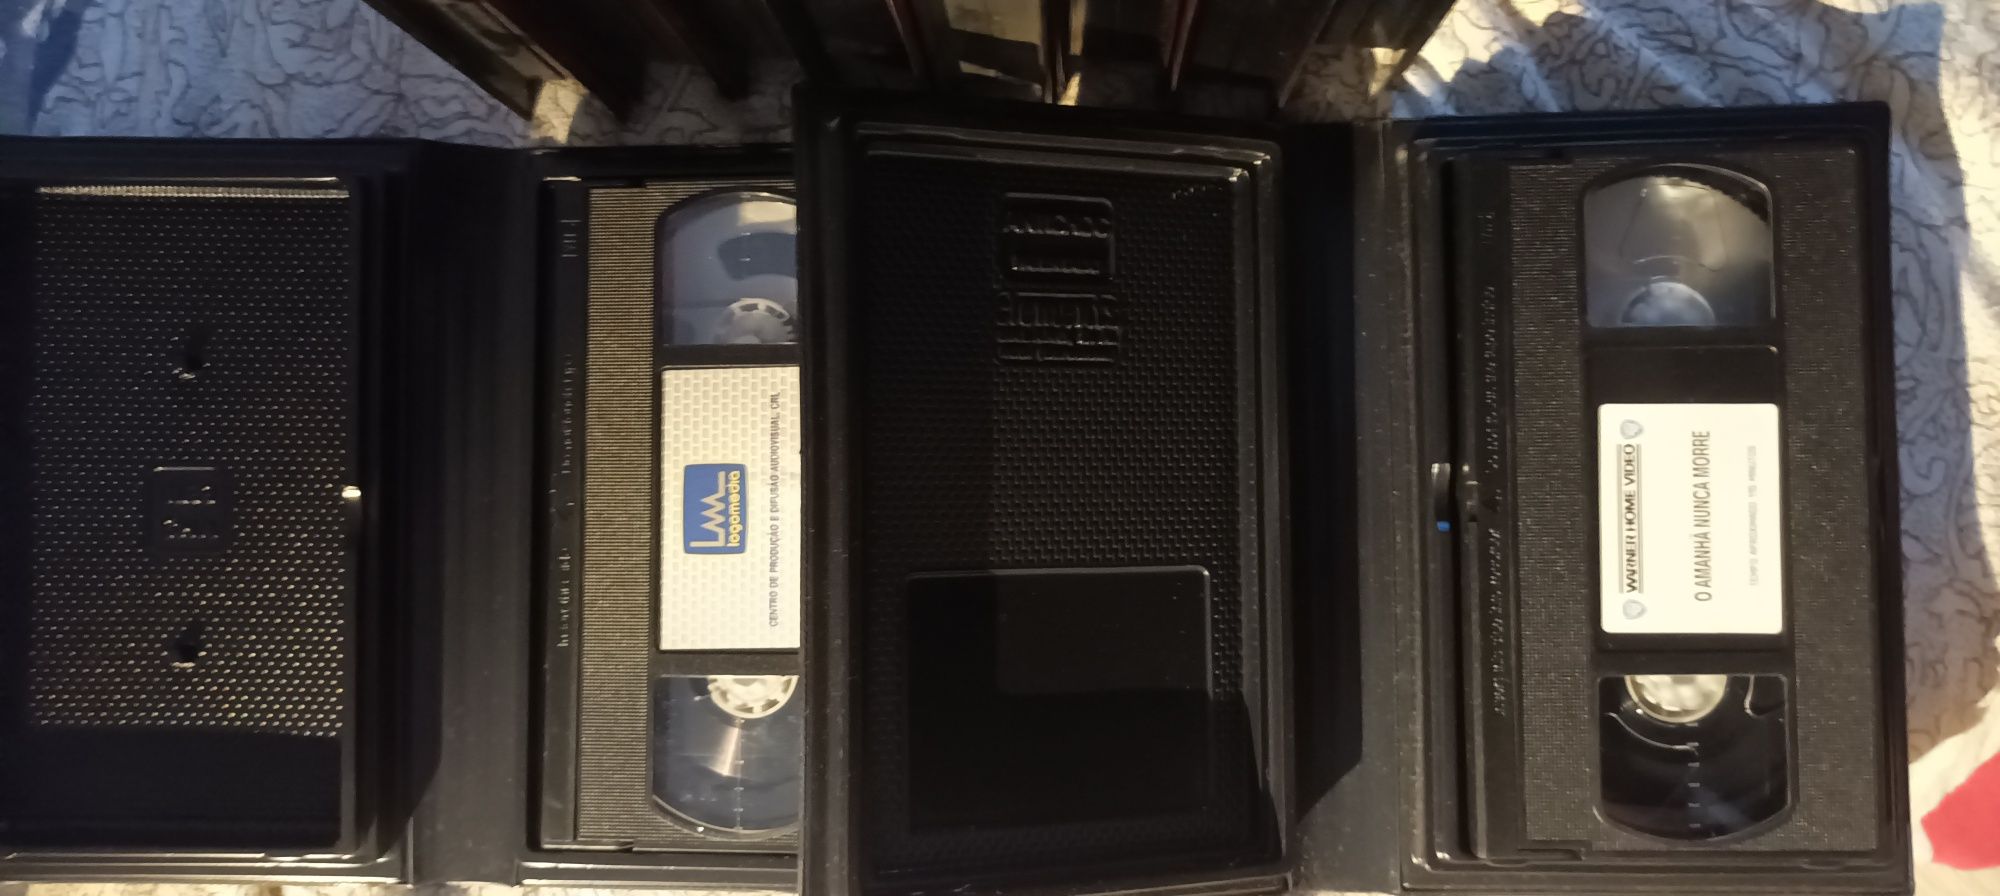 10 Cassetes VHS imaculadas  nunca rodadas de filmes do 007